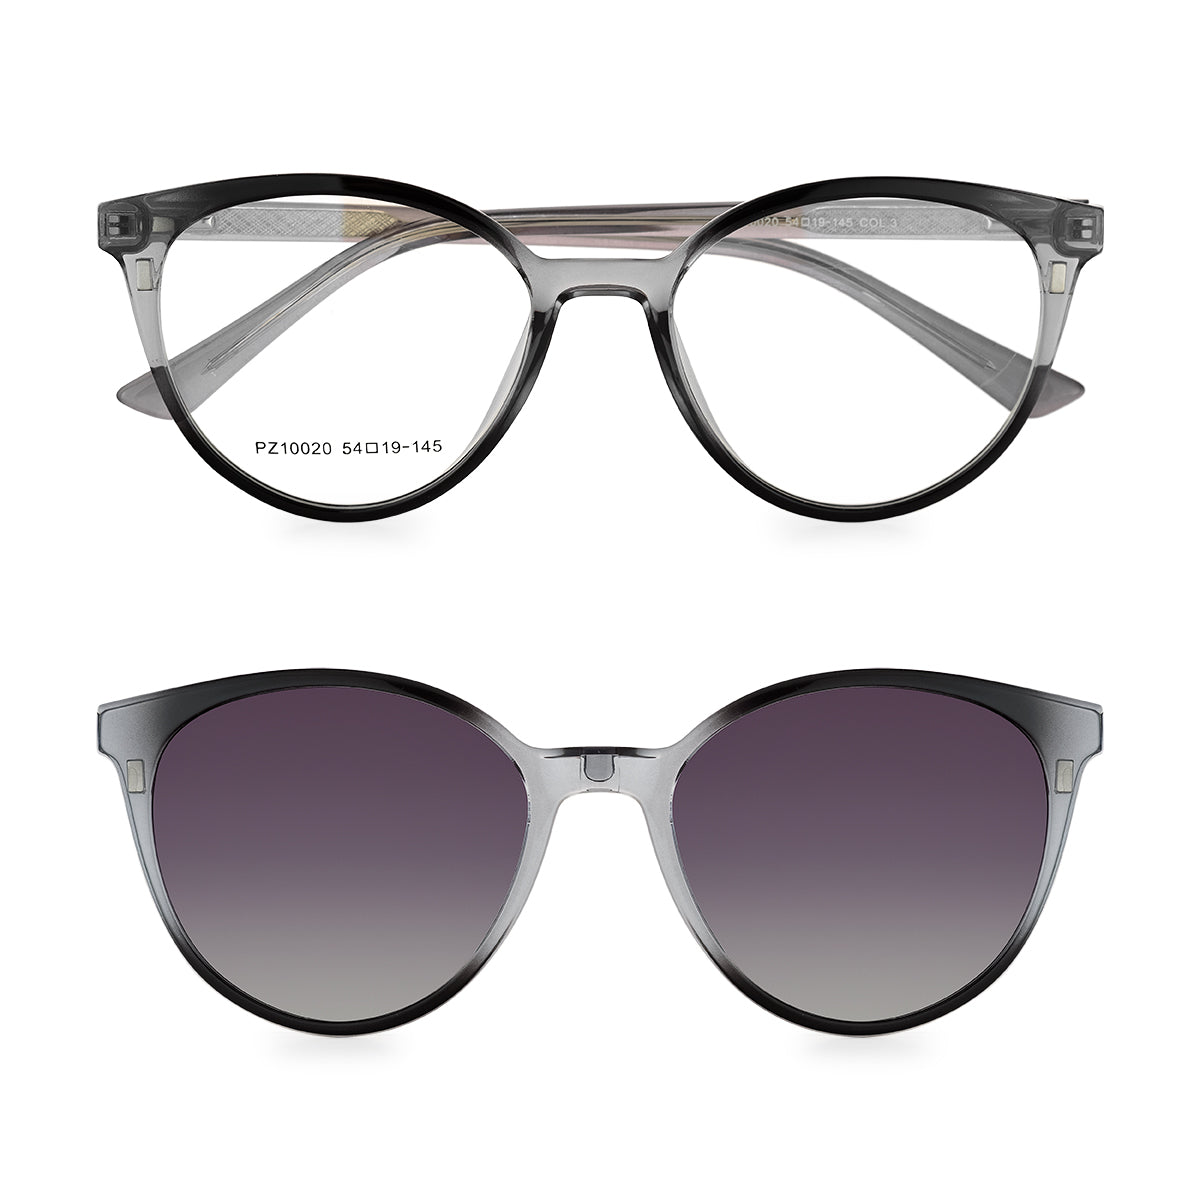 Óculos de Grau Kessy 390